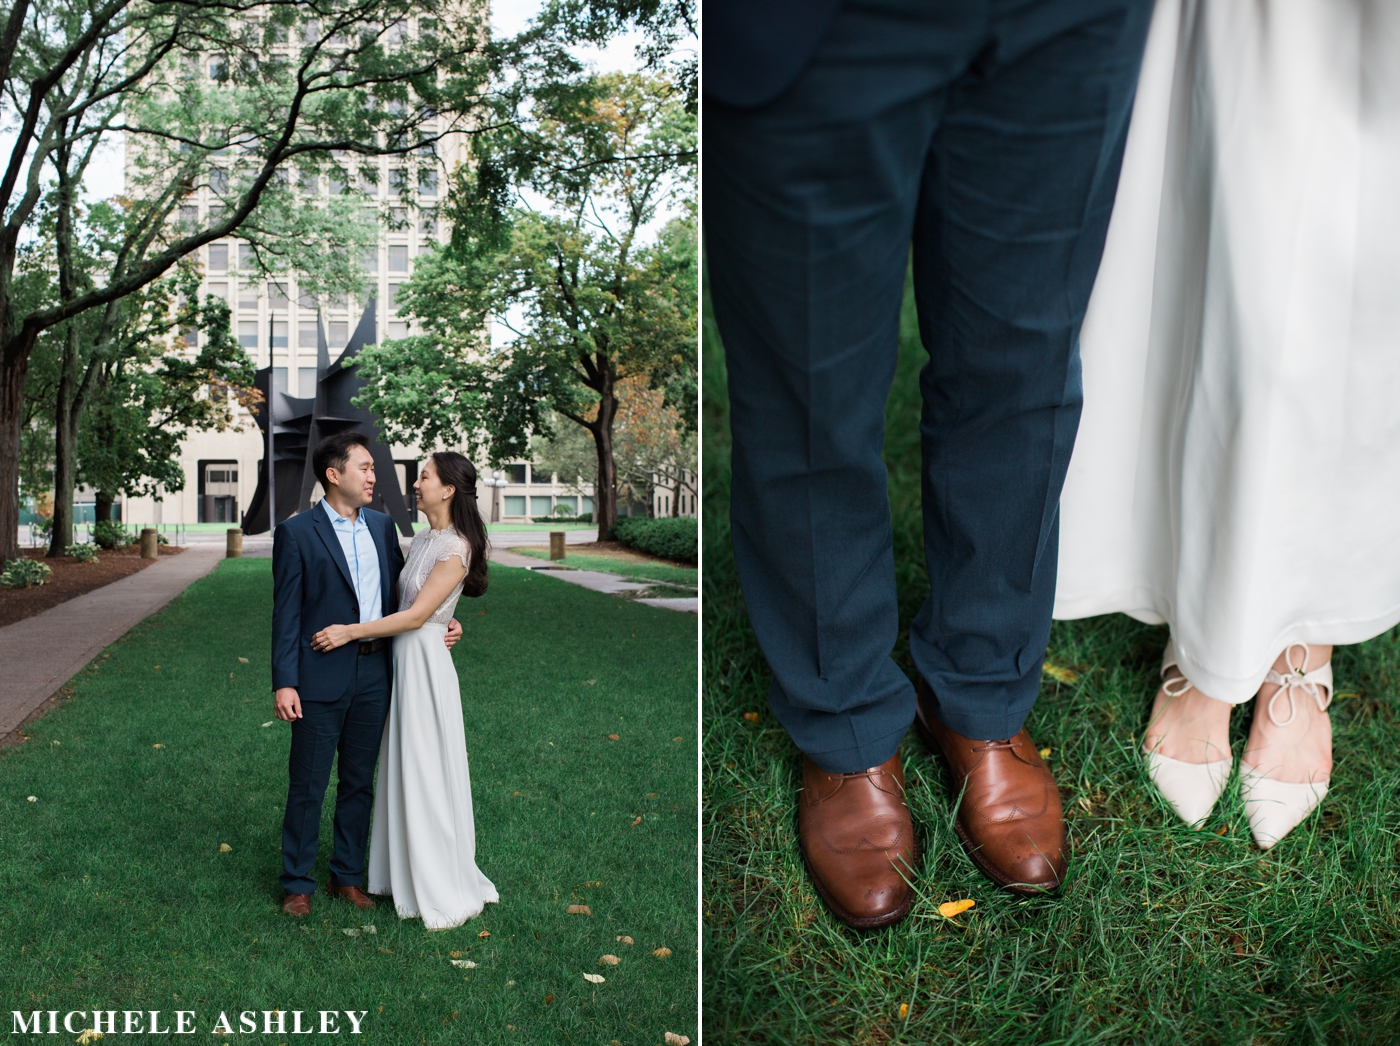 Cambridge Wedding Photographer | Michele Ashley Photography